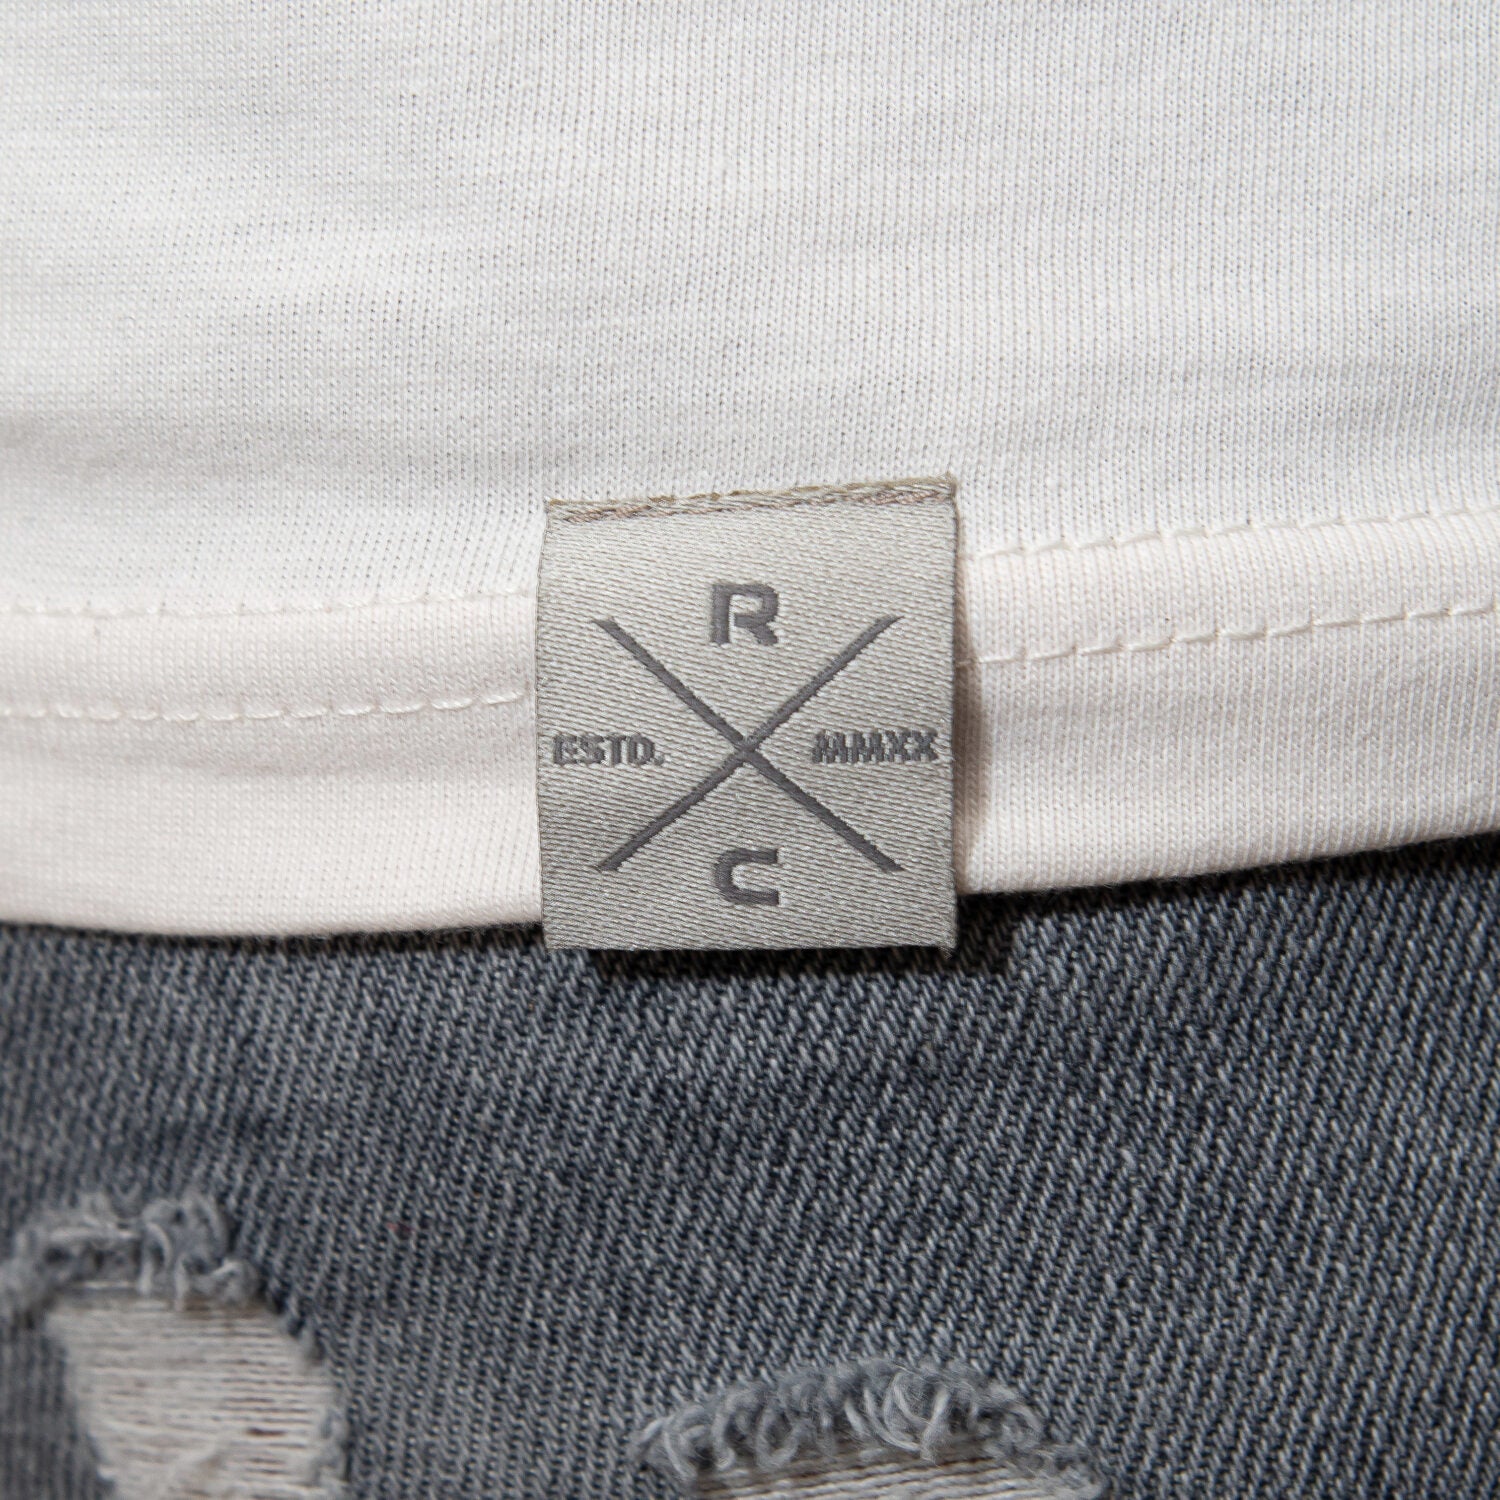 Restless Crew Unisex T-Shirt BULB - Vintage White_1.2